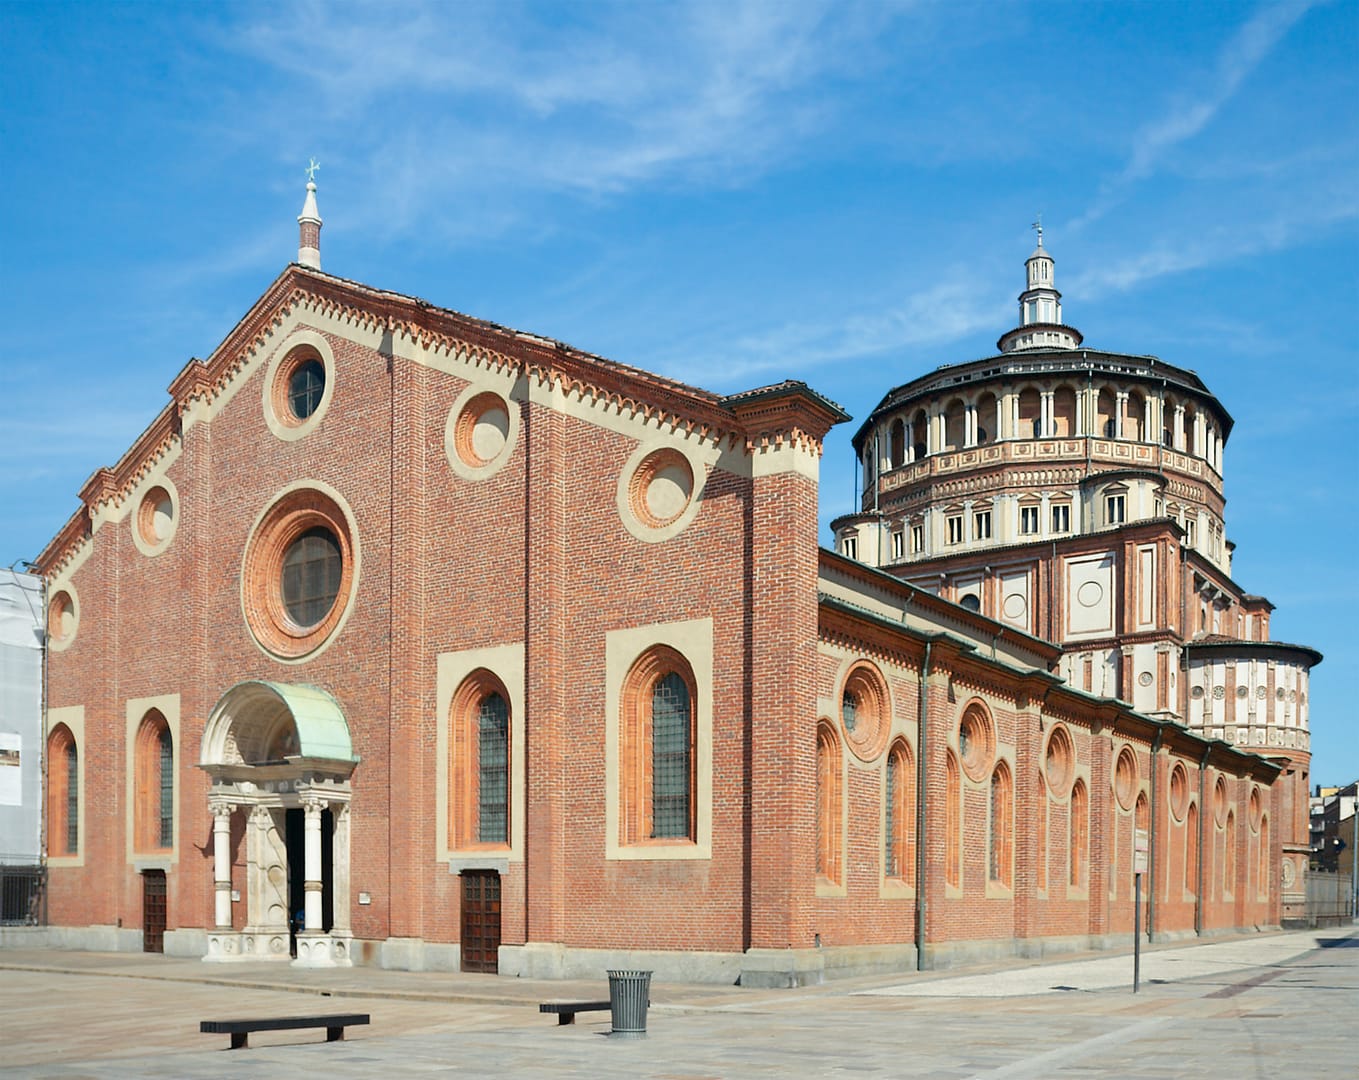 Convent of Santa Maria delle Grazie - place where is the last supper of leonardo da vinci